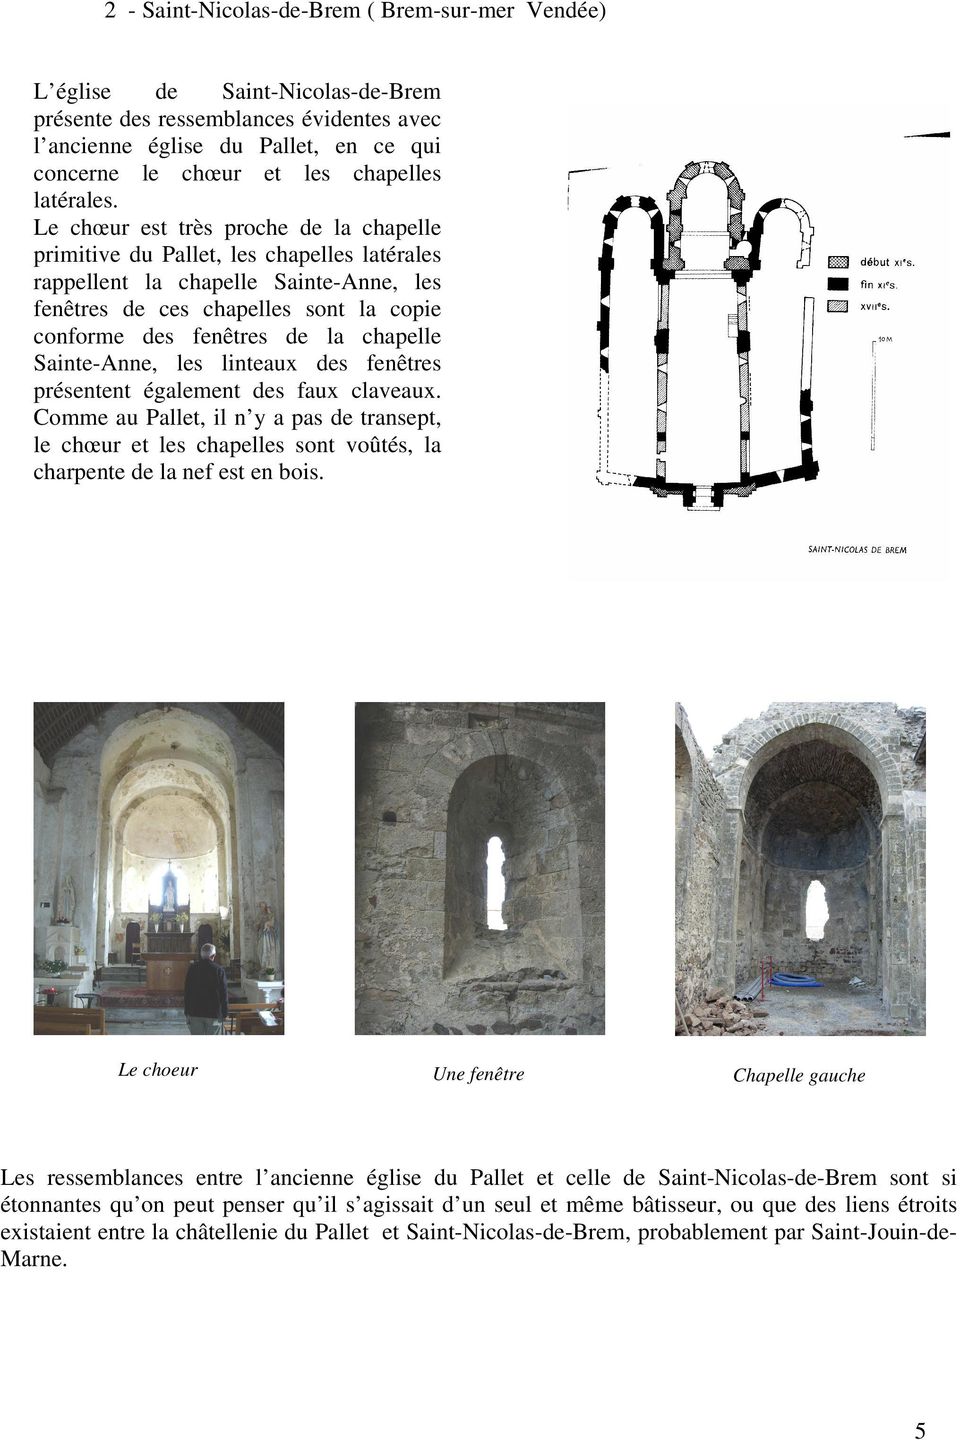 Le chœur est très proche de la chapelle primitive du Pallet, les chapelles latérales rappellent la chapelle Sainte-Anne, les fenêtres de ces chapelles sont la copie conforme des fenêtres de la